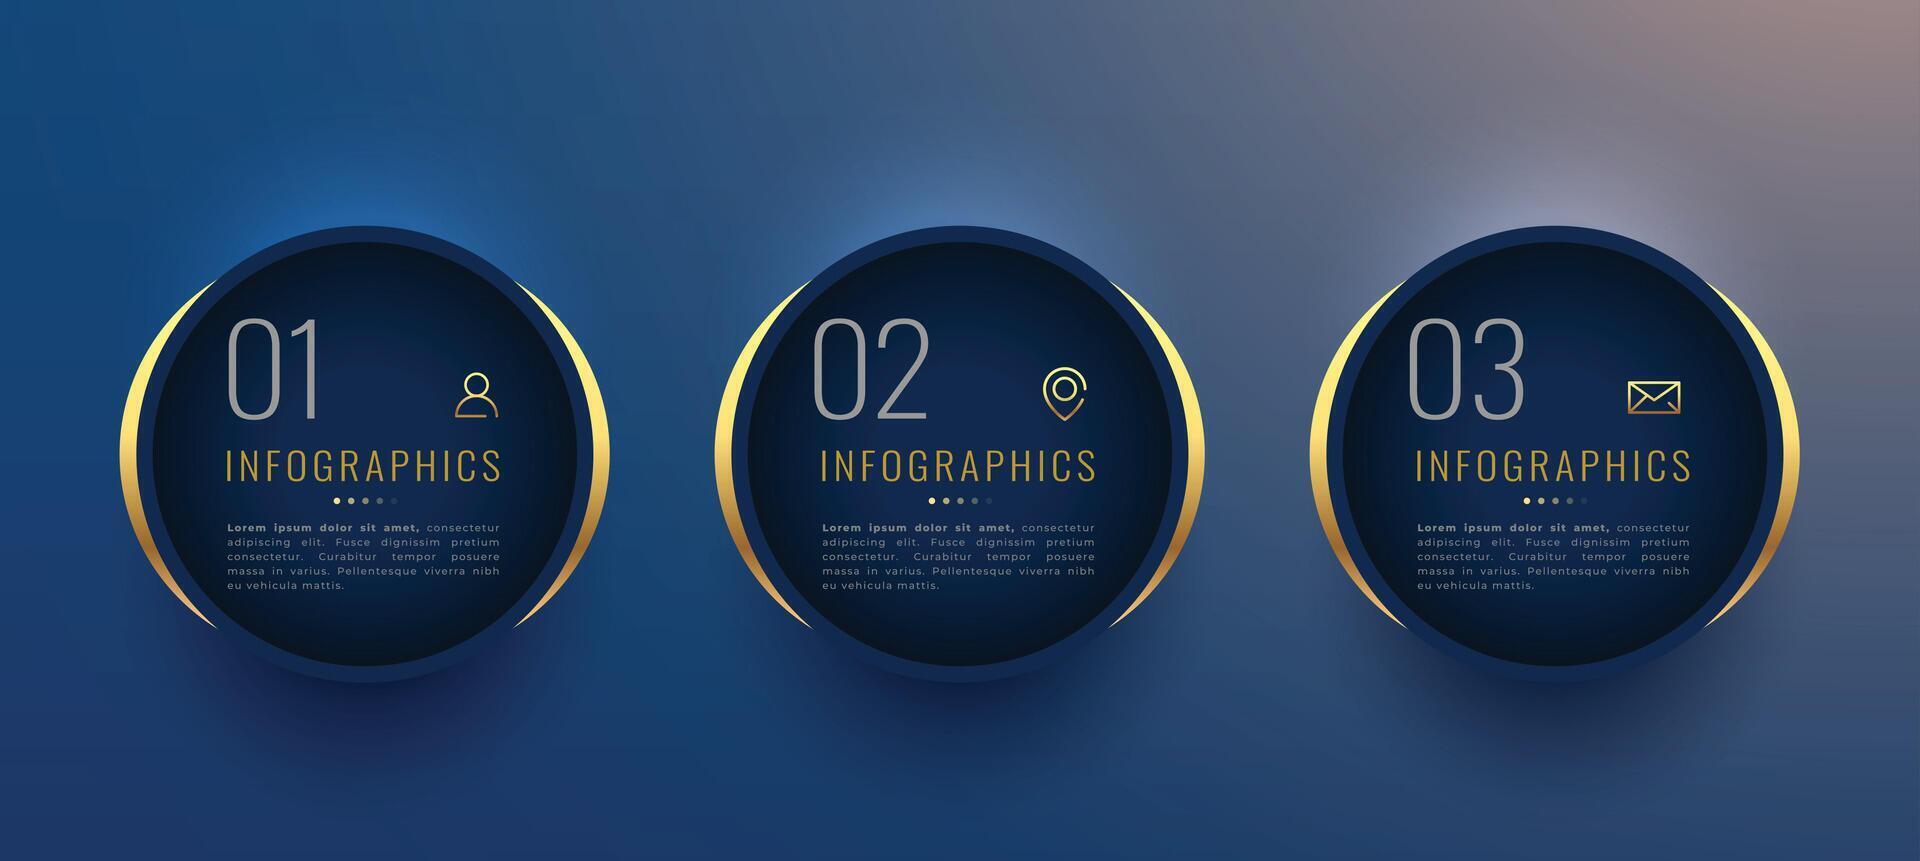 drie opties of stappen bedrijf infographic banier met goud effect vector